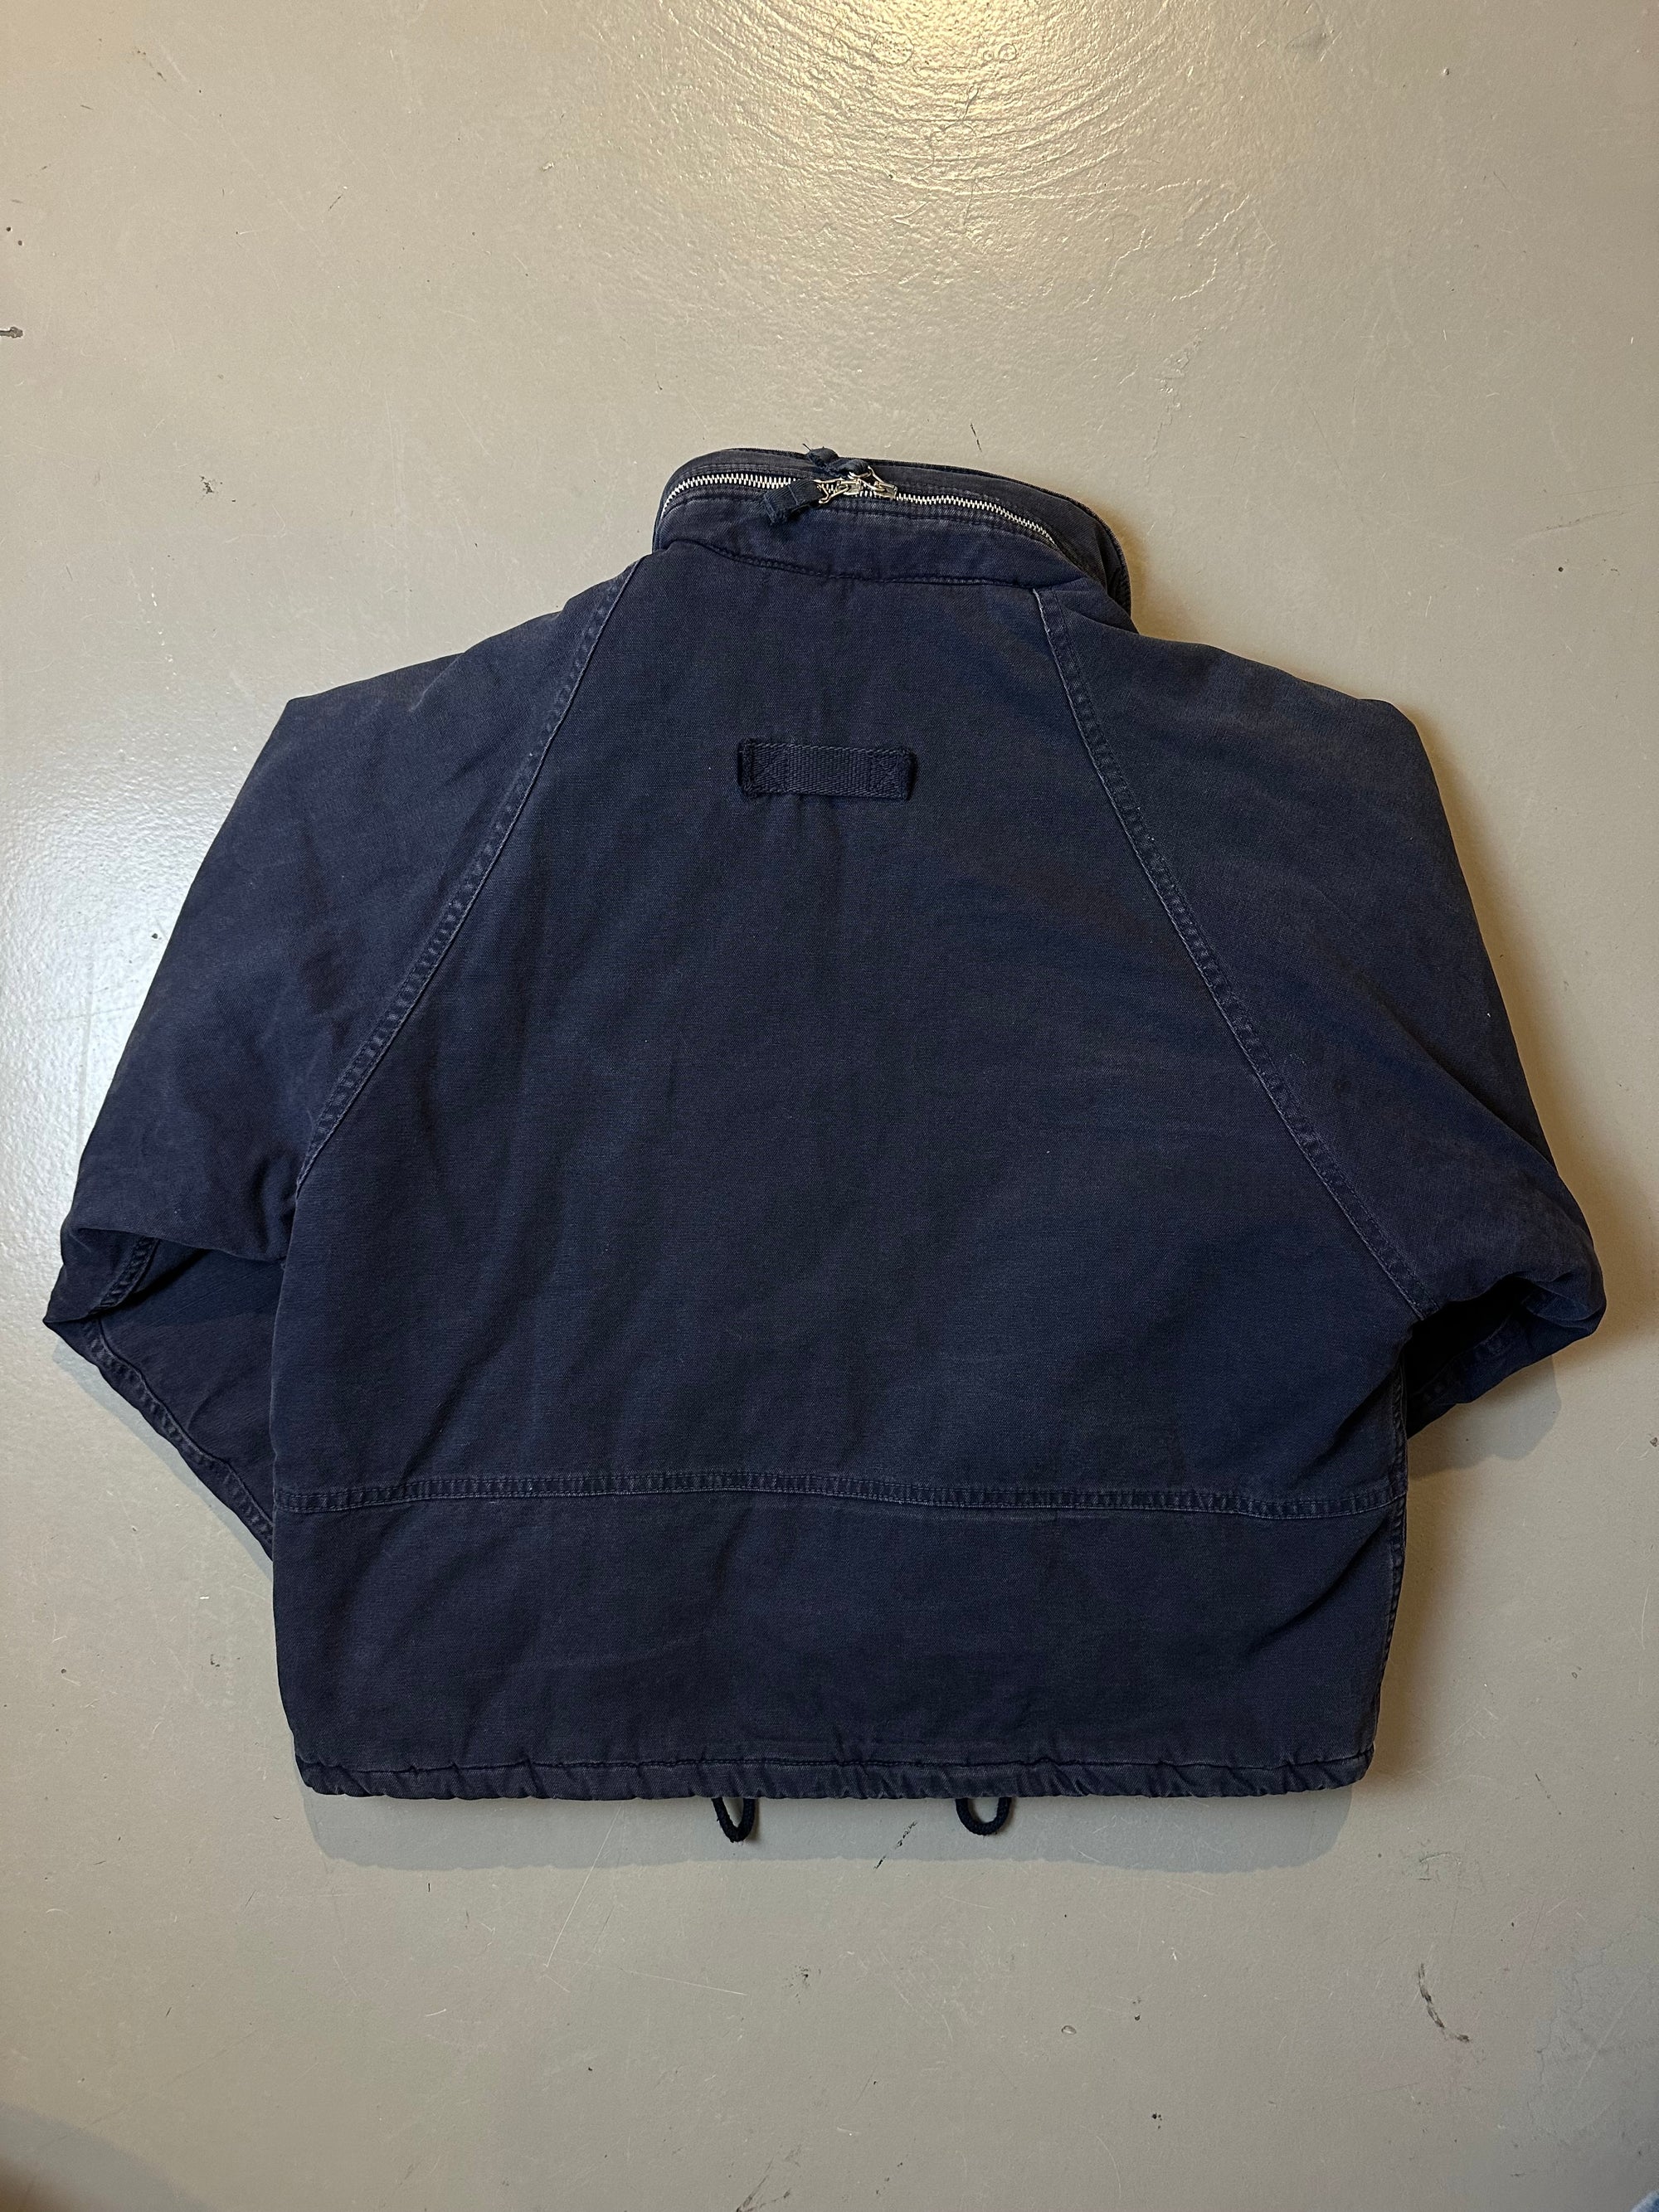  Produktbild von Navy farbene Energie Jacke von hinten in Größe M/L mit silbernen Knöpfen 